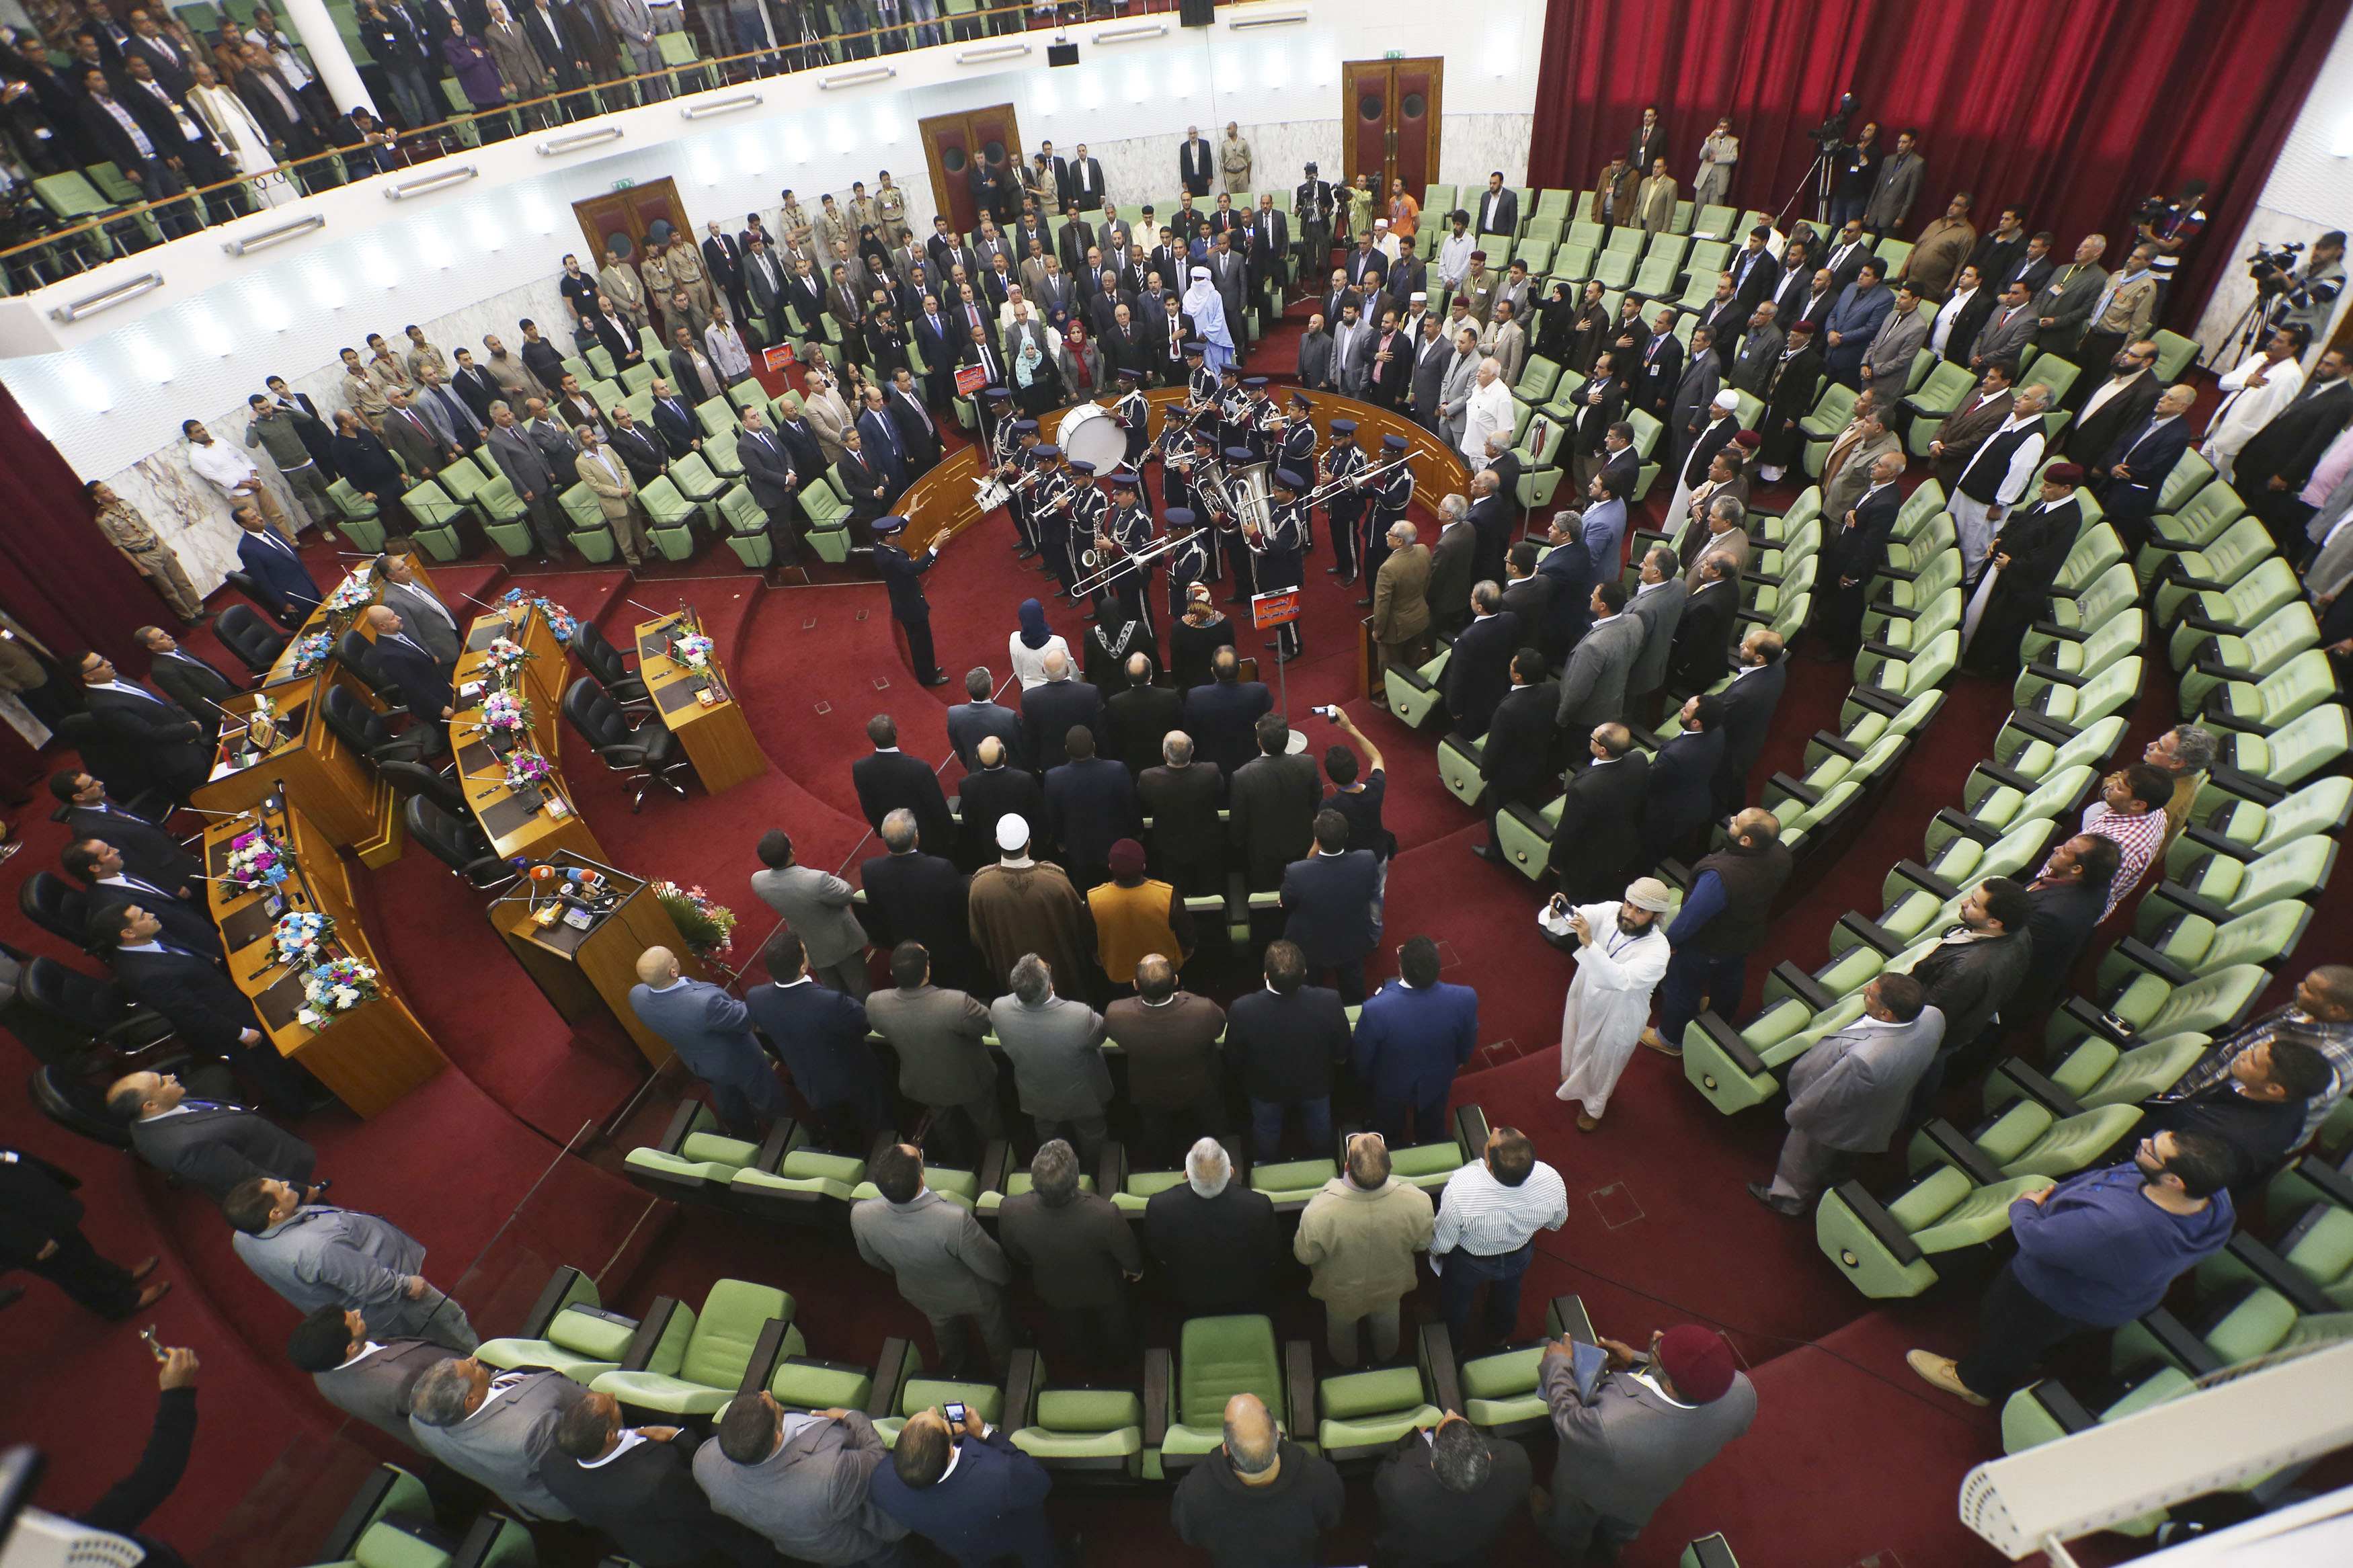 البرلمان الليبي يحل كافة الميليشيات ويطالب المجتمع الدولي بحماية المدنيين